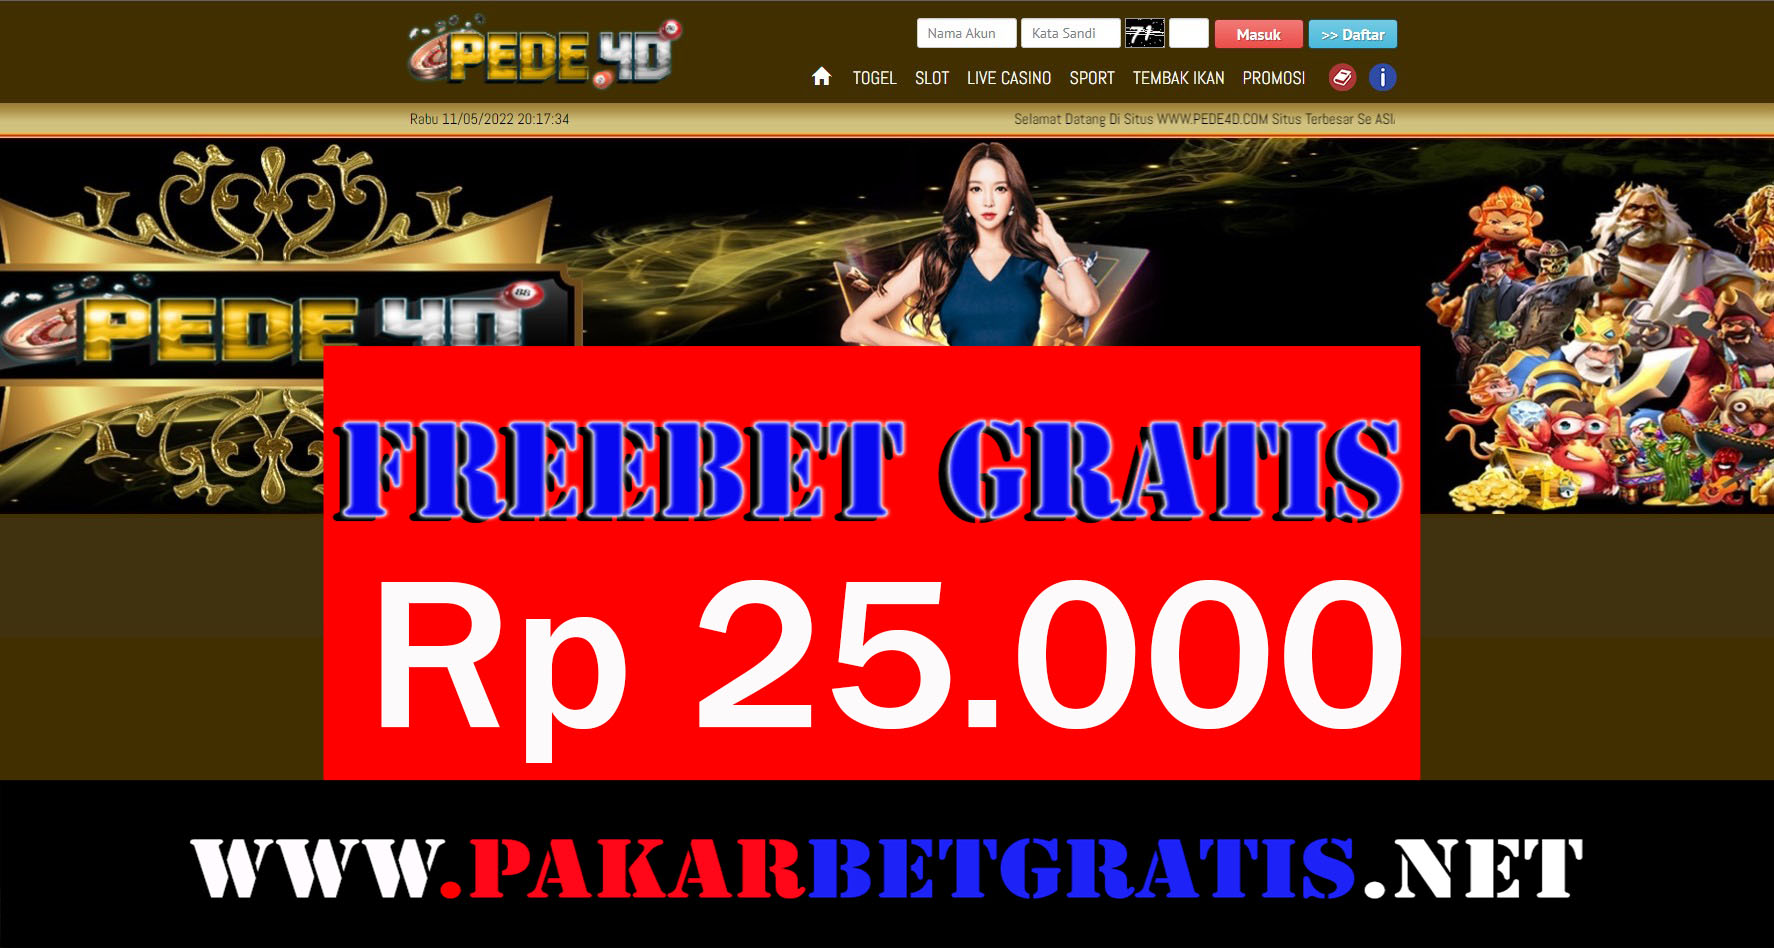 Pede4D Freebet Gratis Rp 25.000 Tanpa Deposit